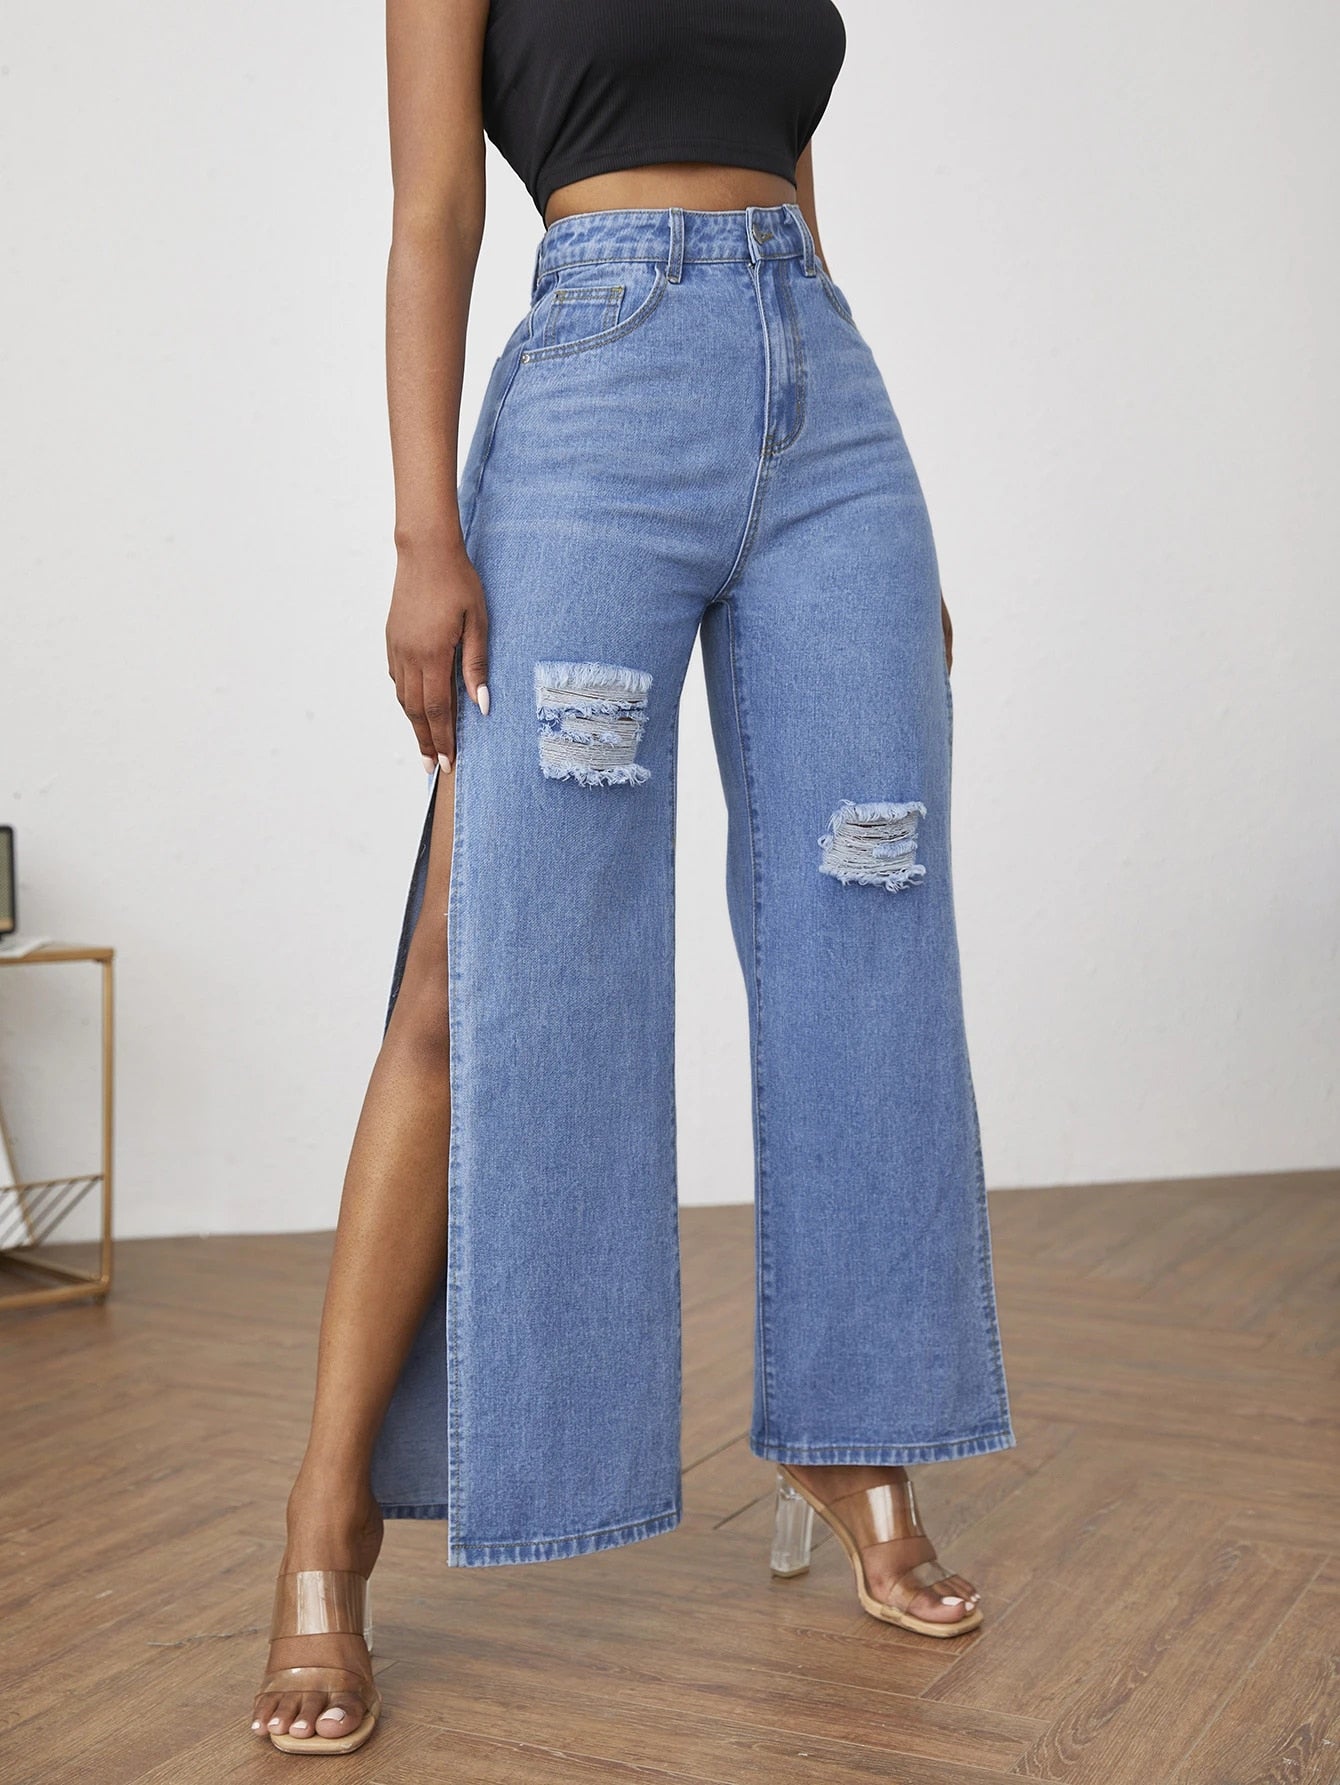 Side Slit Women's Casual Blue Jeans